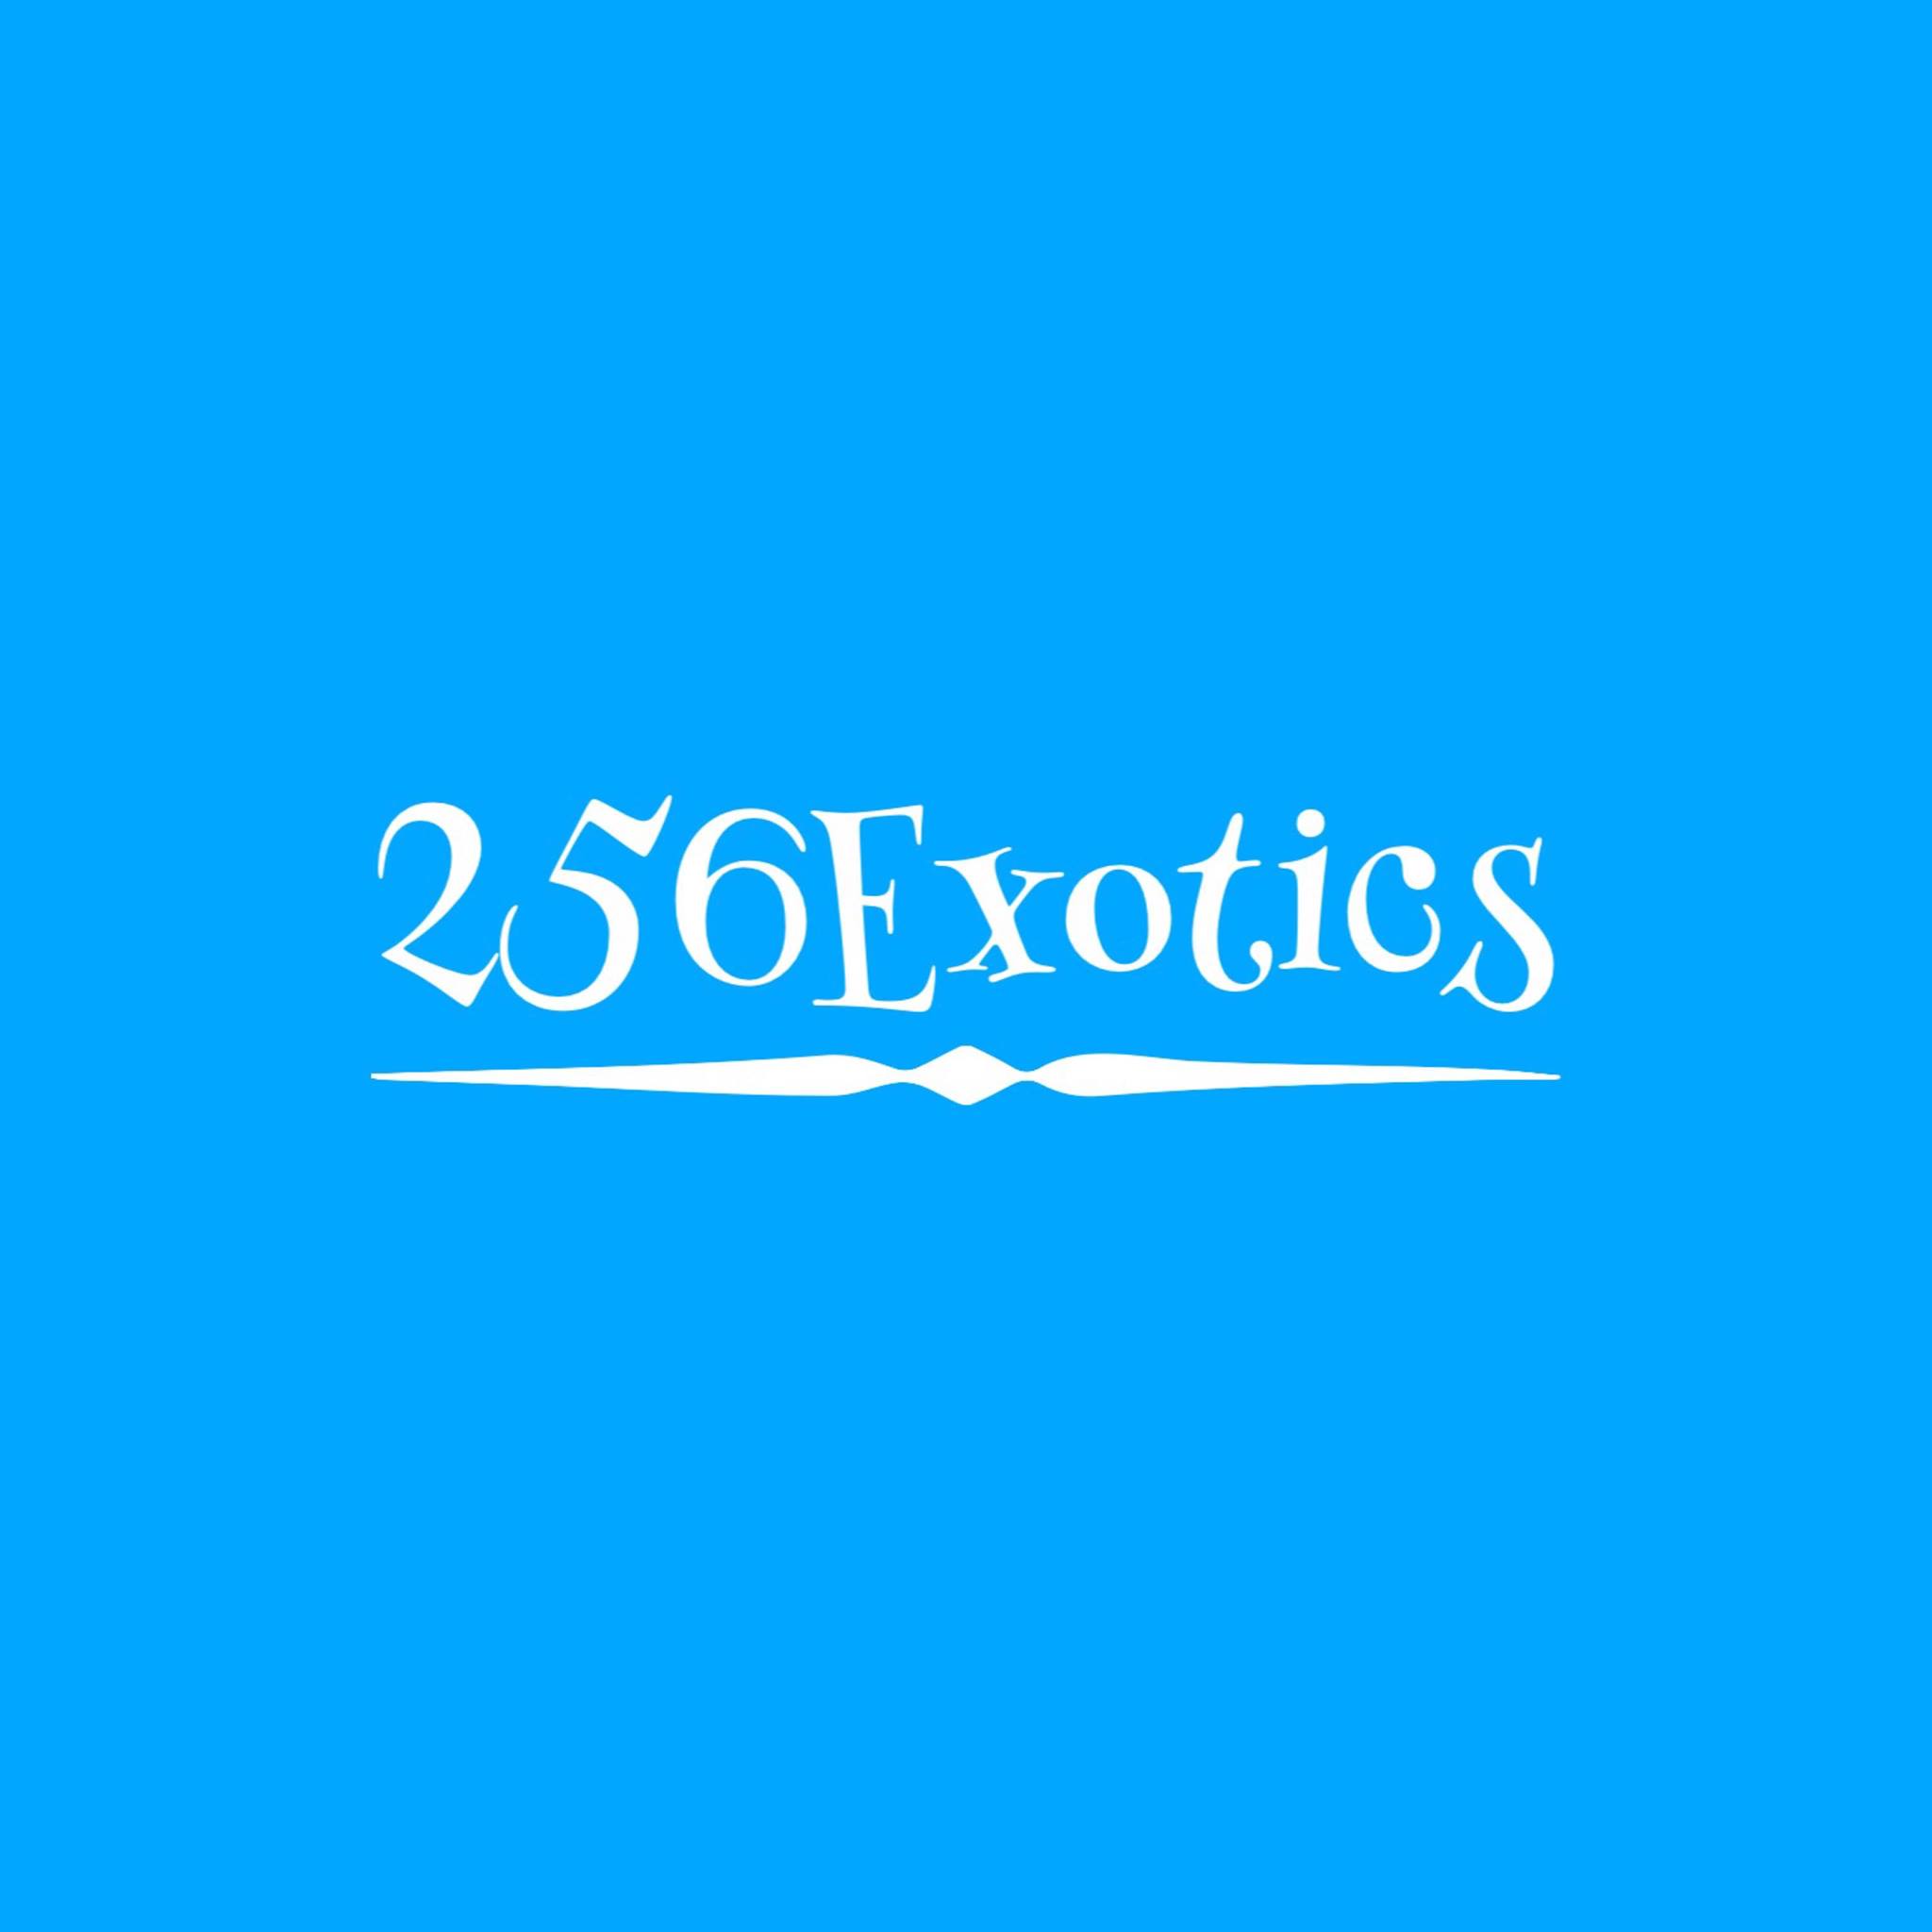 Company logo of 256Exotics